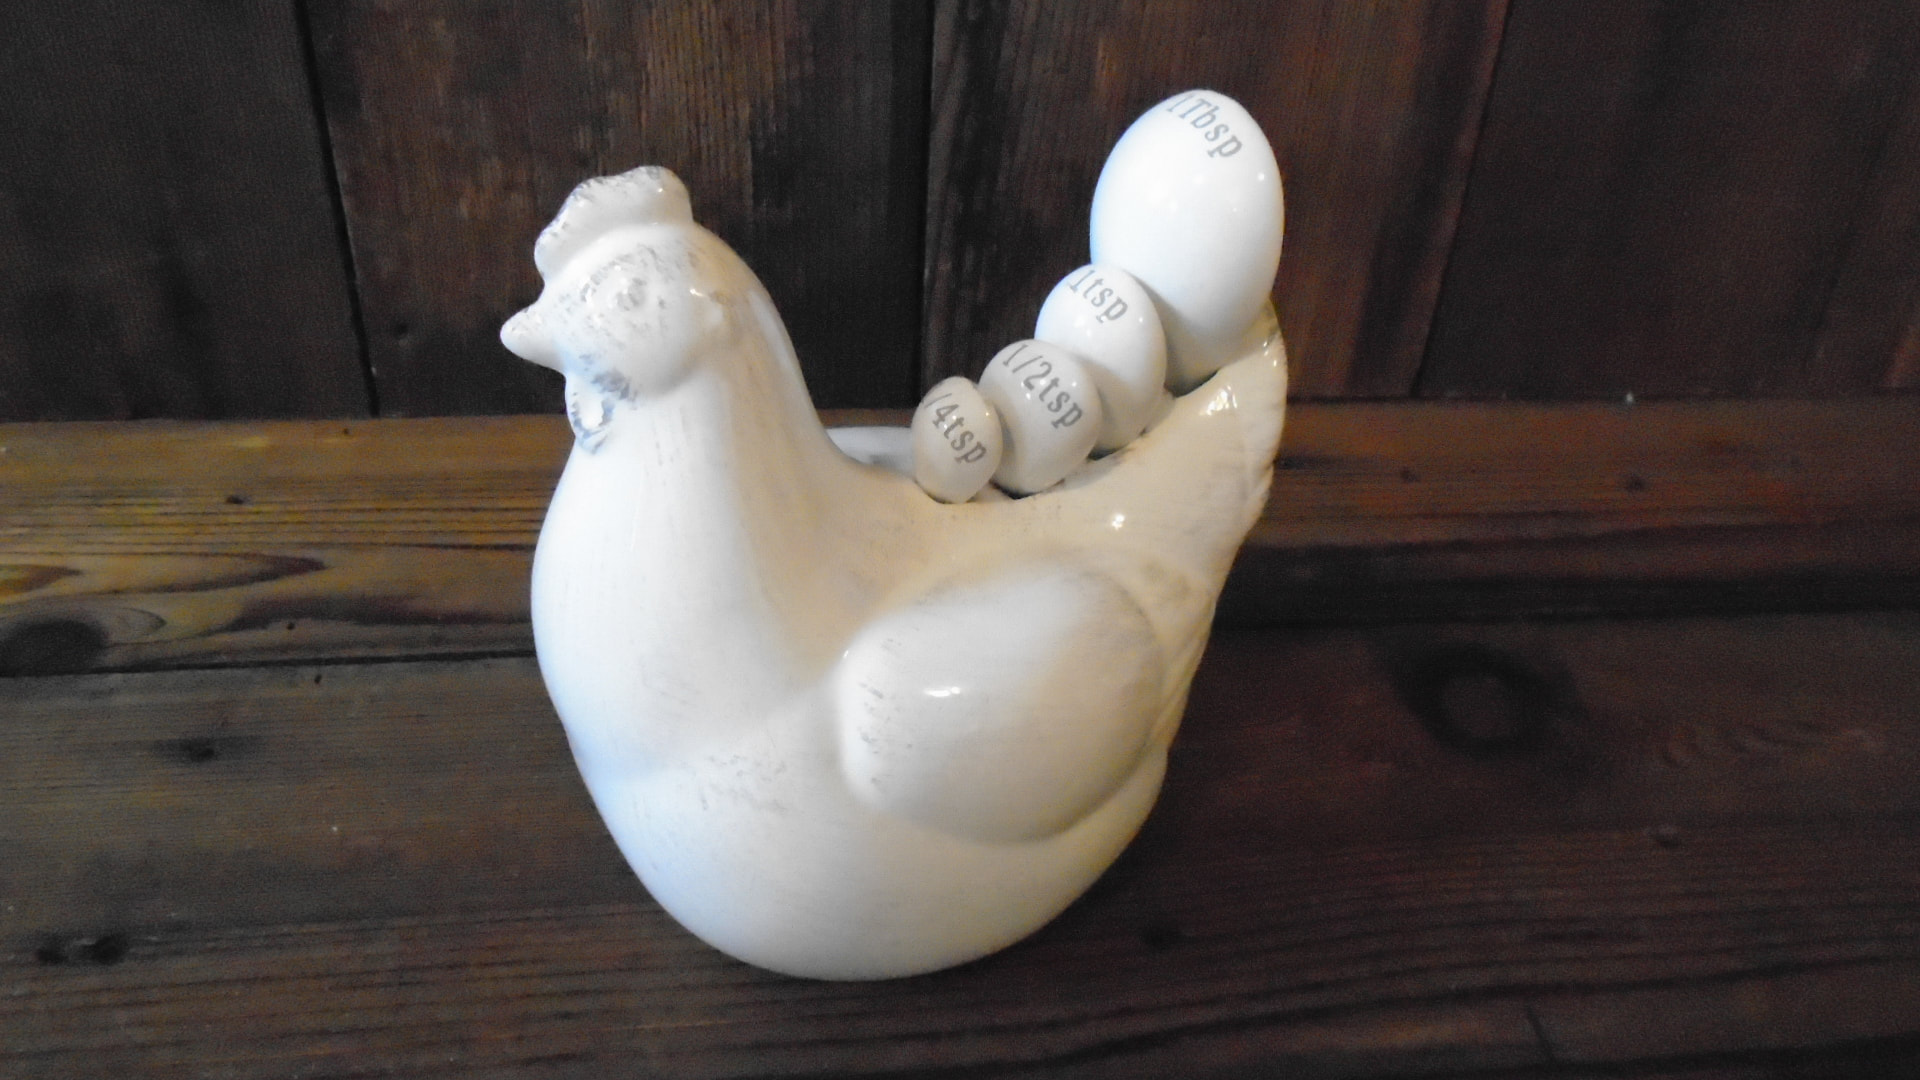 Vintage Ceramic Chicken Measuring Spoon Holder Complete Set 